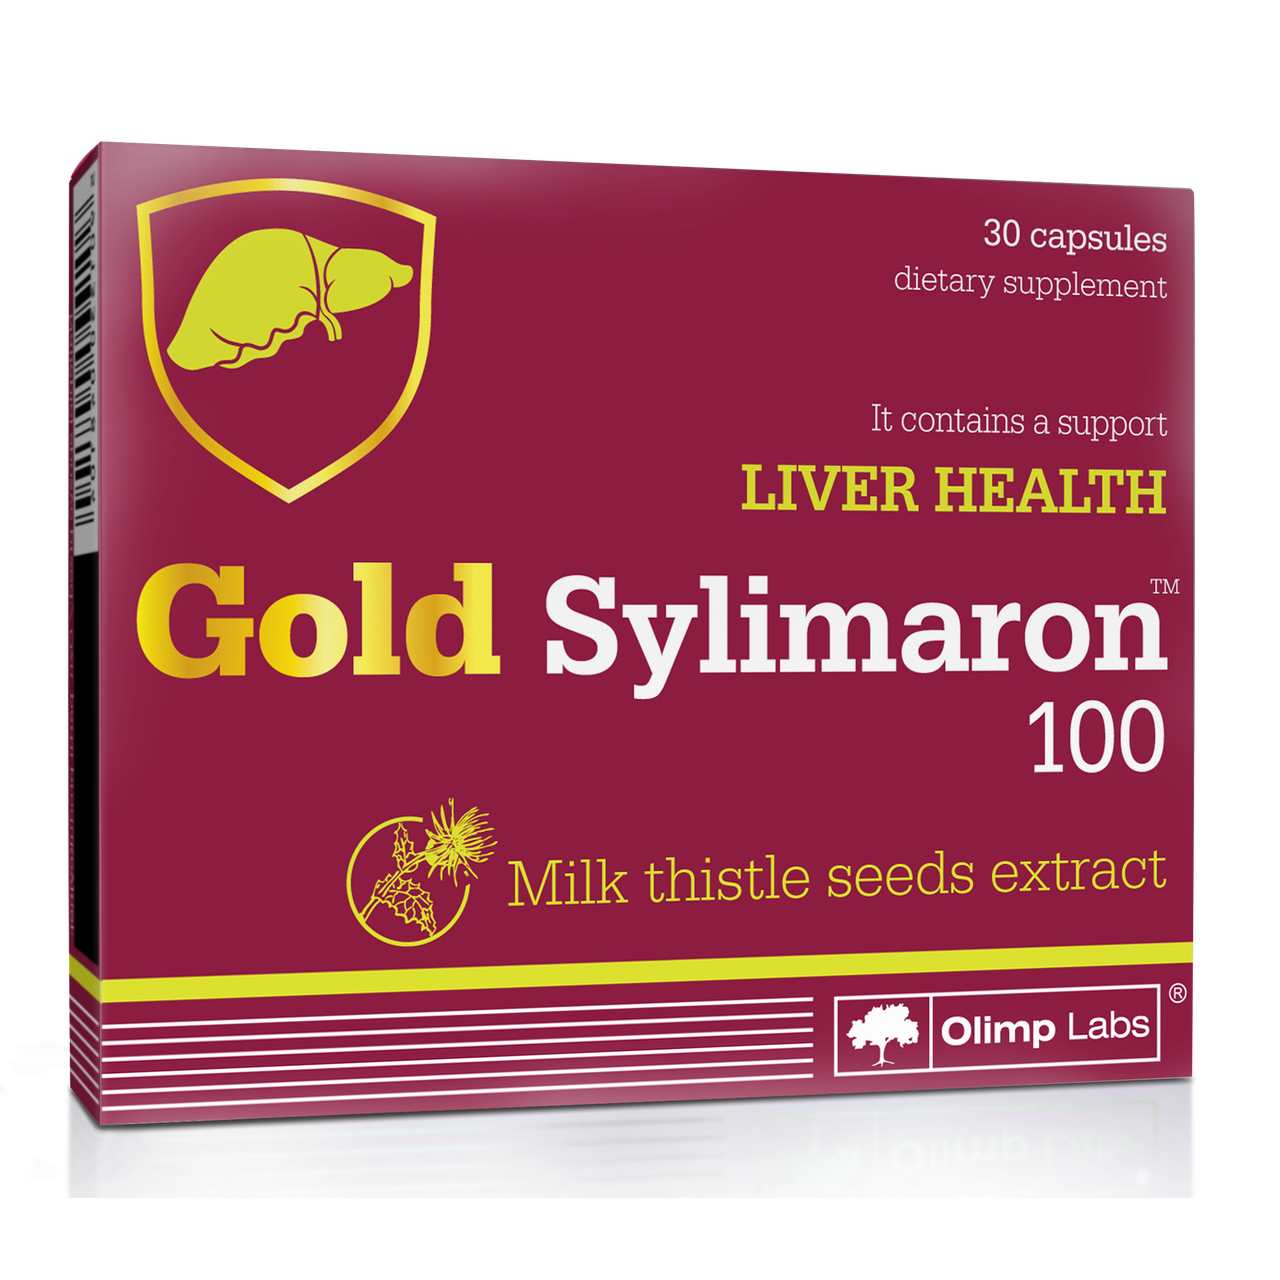 Натуральная добавка Olimp Gold Sylimaron, 30 капсул,  мл, Olimp Labs. Hатуральные продукты. Поддержание здоровья 